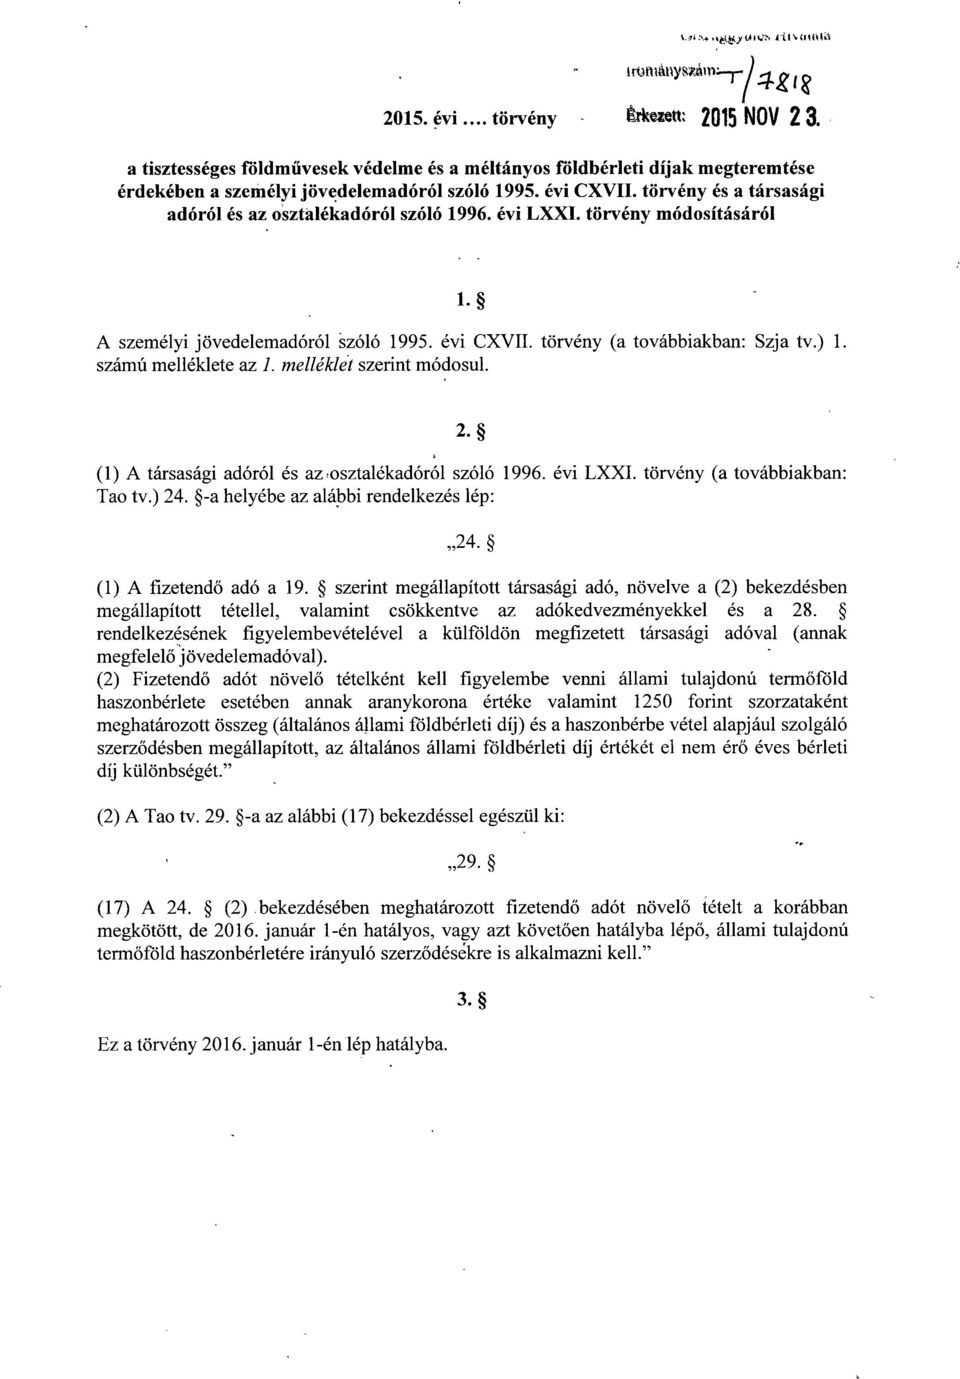 törvény és a társasági adóról és az osztálékadóról szóló 1996. évi LXXI. törvény módosításáró l l. A személyi jövedelemadóról szóló 1995. évi CXVII. törvény (a továbbiakban : Szja tv.) 1.